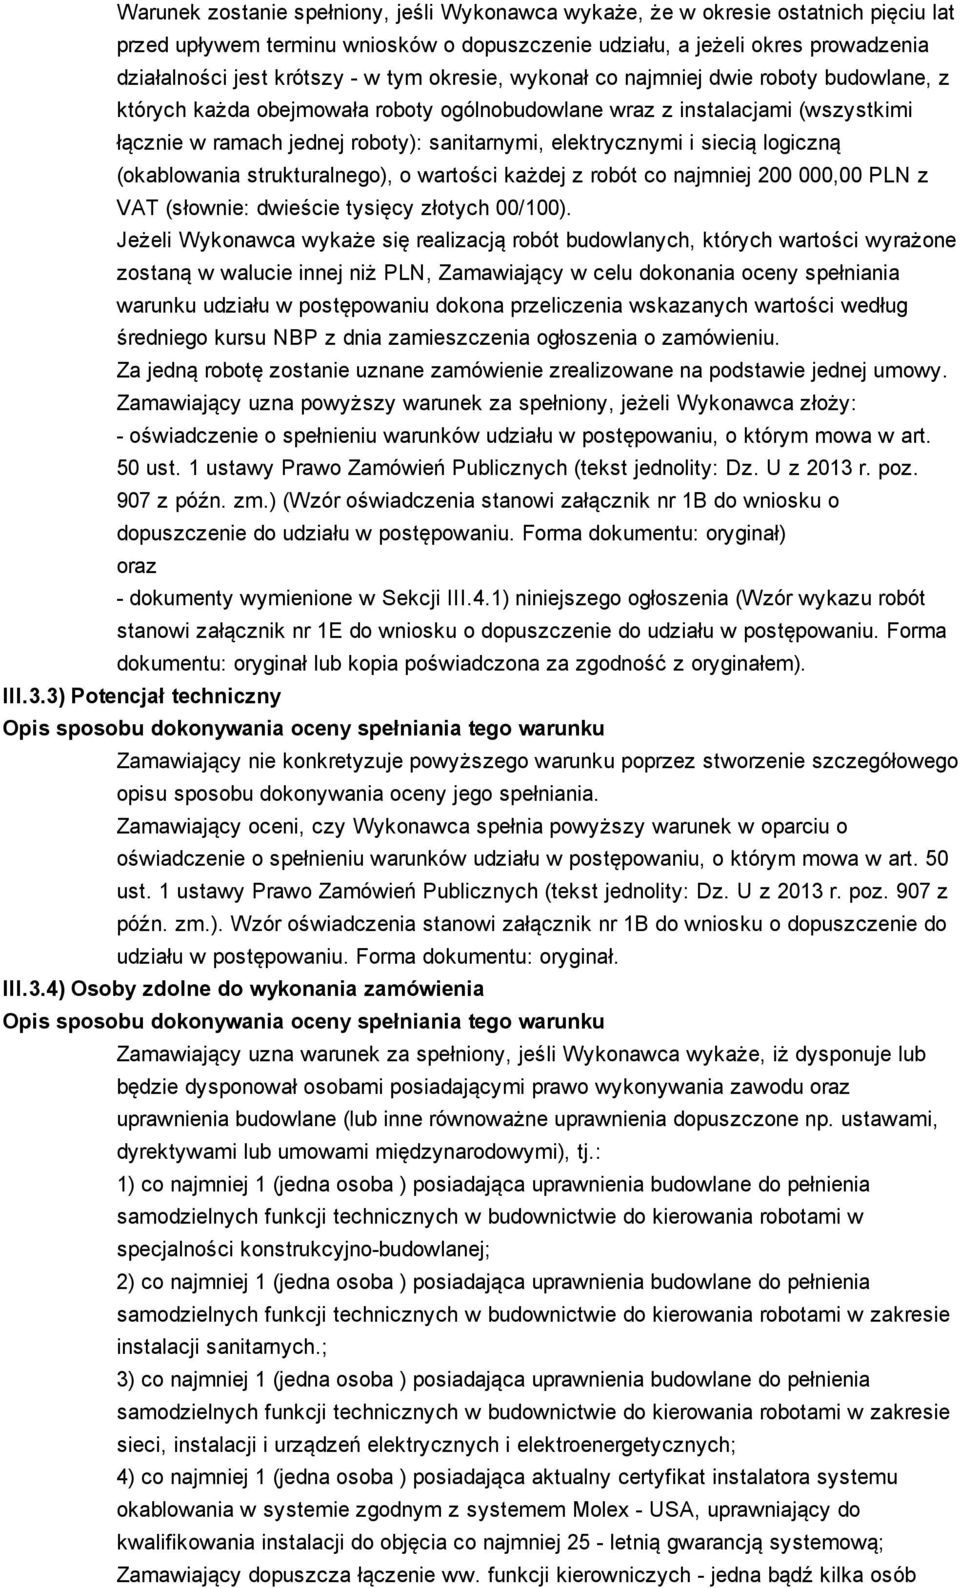 siecią logiczną (okablowania strukturalnego), o wartości każdej z robót co najmniej 200 000,00 PLN z VAT (słownie: dwieście tysięcy złotych 00/100).